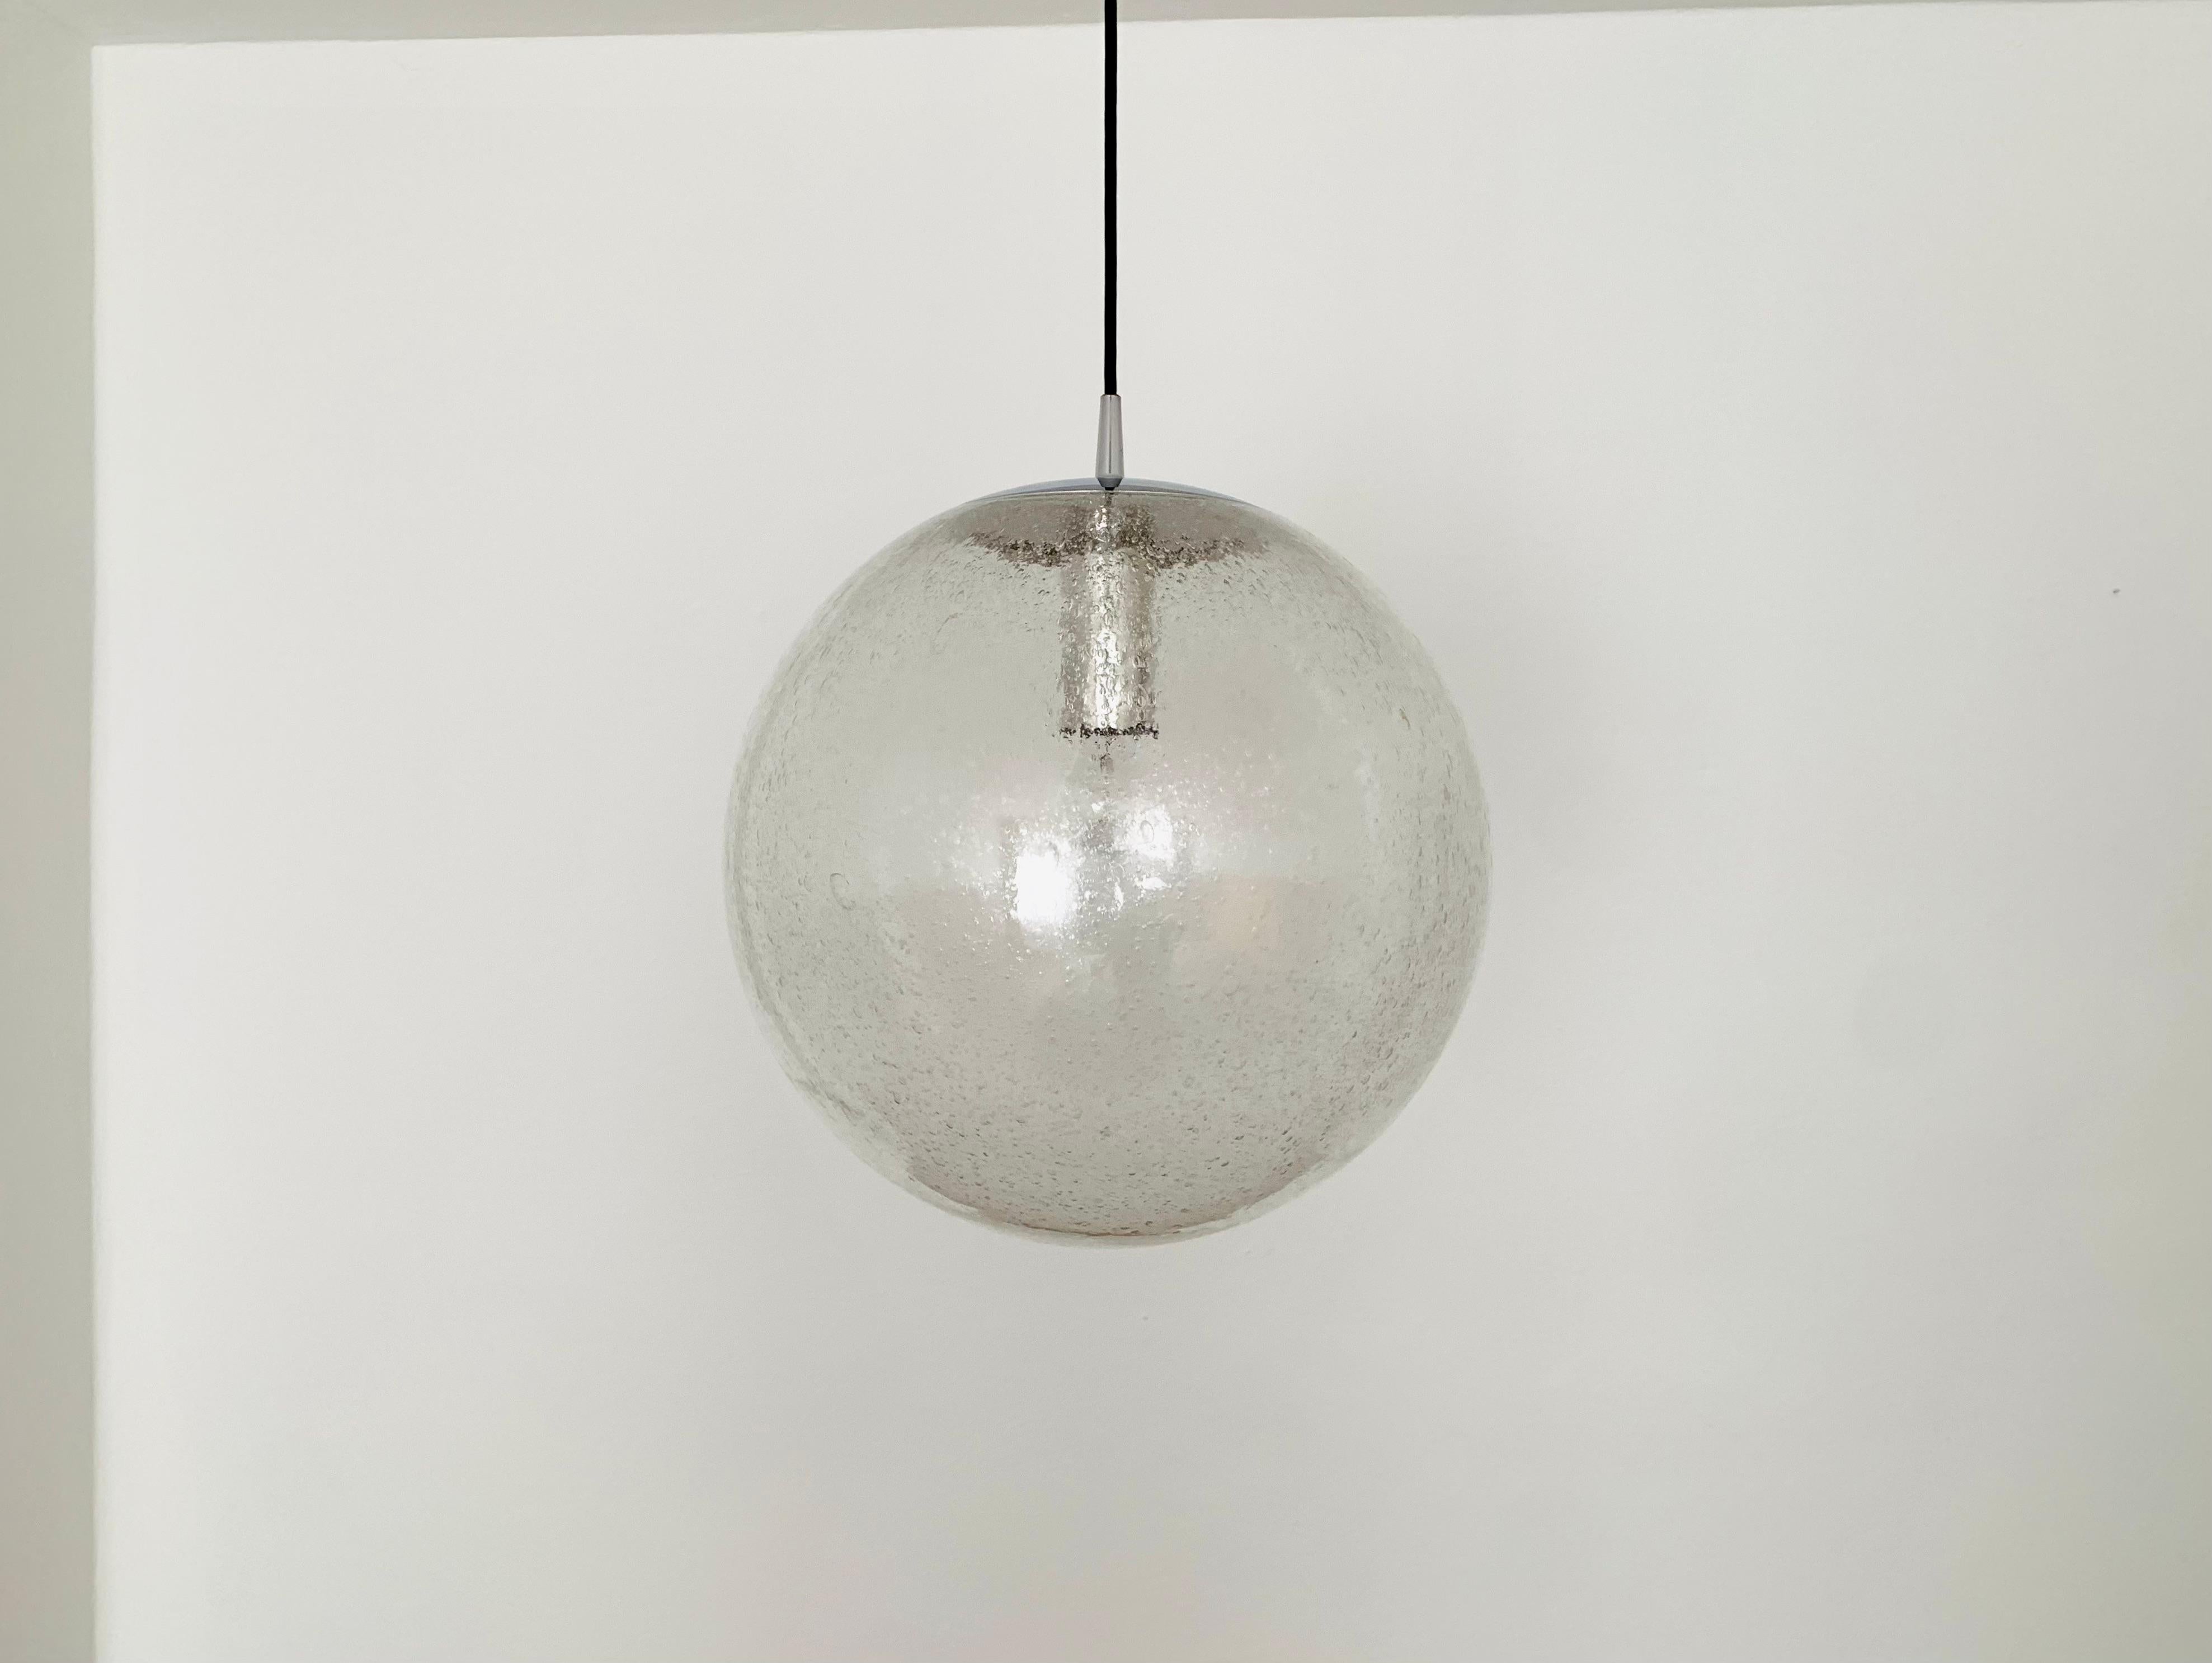 Très grande lampe suspendue en verre bullé des années 1960.
La lampe est très élégante et attire le regard dans toutes les pièces.
La structure du verre crée un jeu de lumière spectaculaire.

Fabricant : Peill et Putzler

Condit :

Très bon état